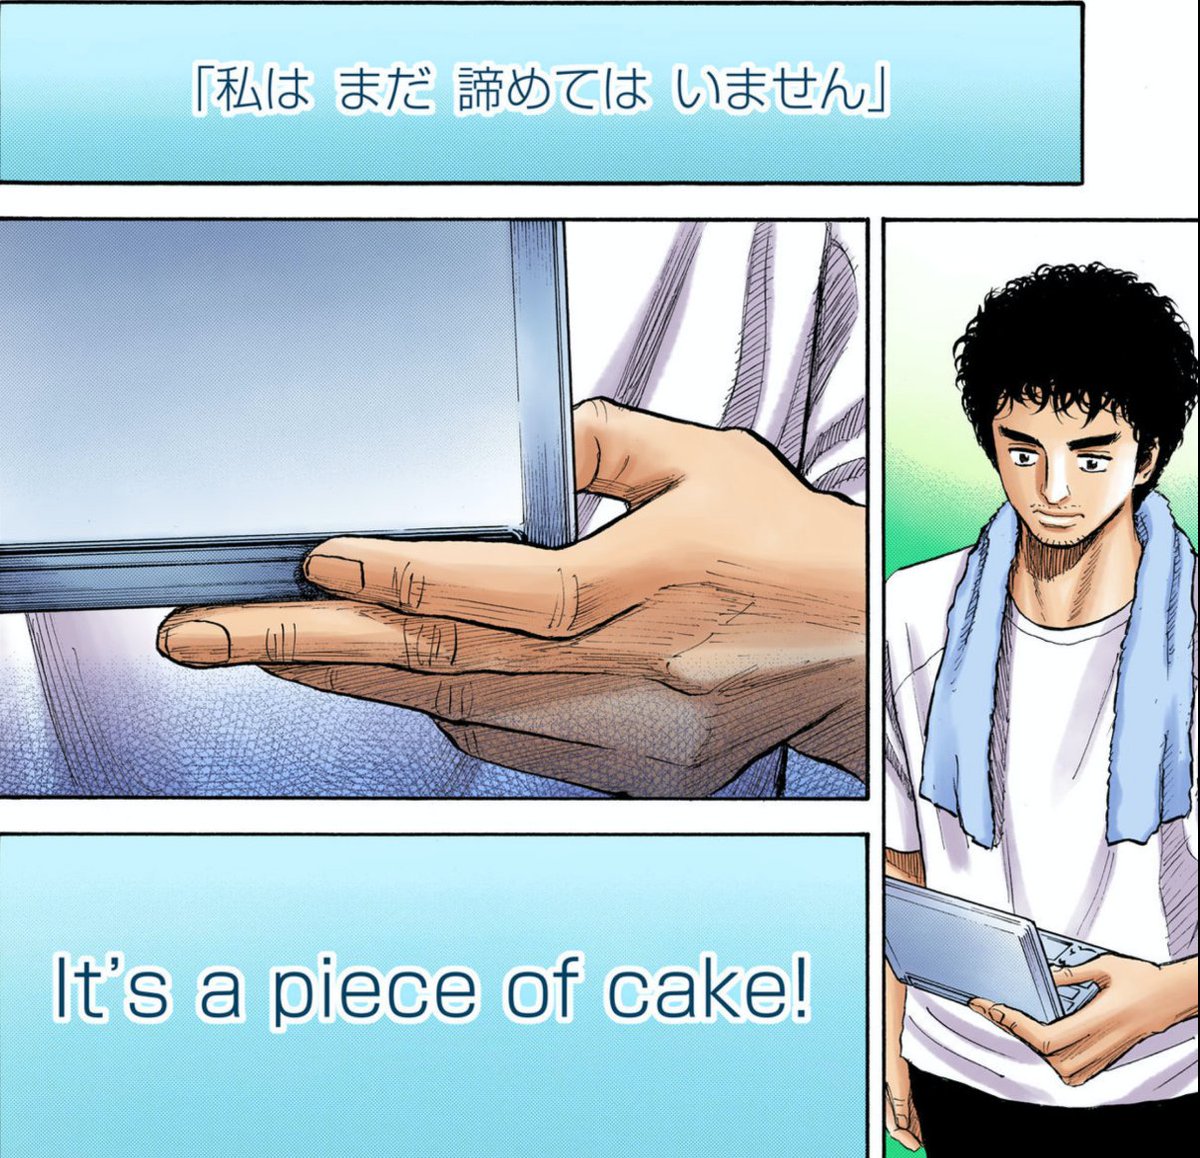 本日(1月6日)は #ケーキの日 です🍰

『宇宙兄弟』でケーキといえば、やっぱりコレ!

"It's a piece of cake"
"楽勝だよ" 